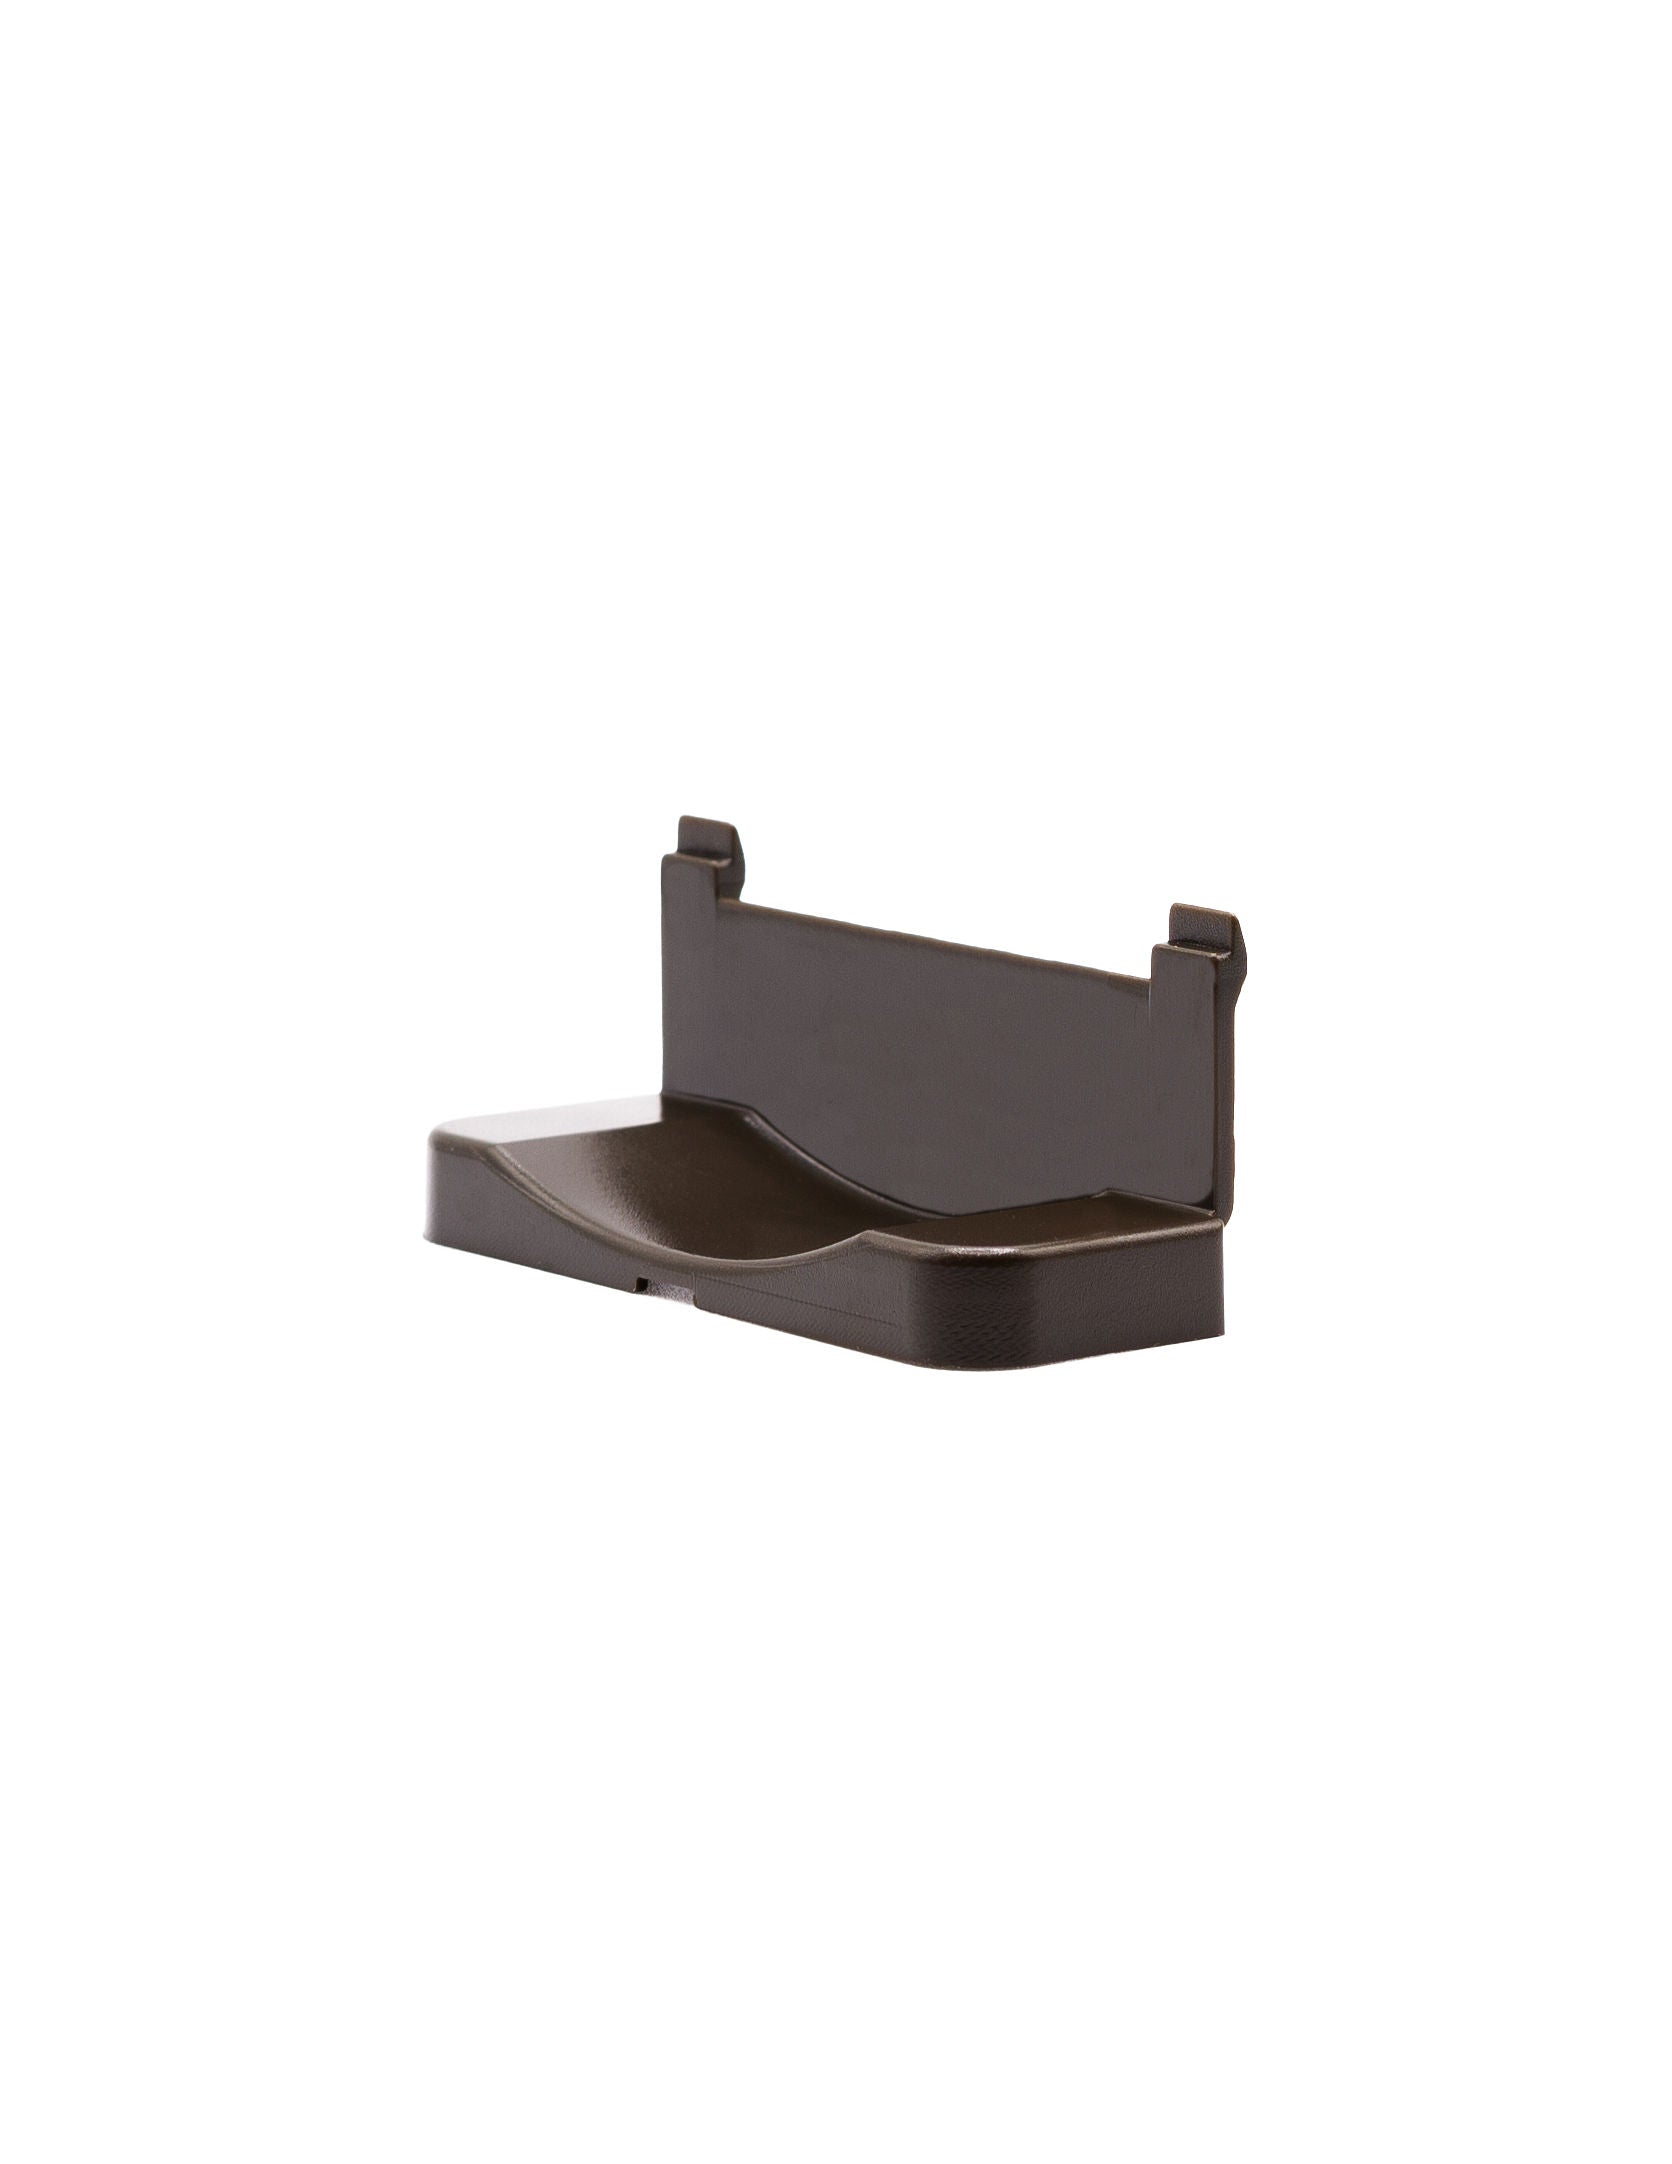 Coulisse Roller blind screw cap plastic - bronze (RC3008-DBR)